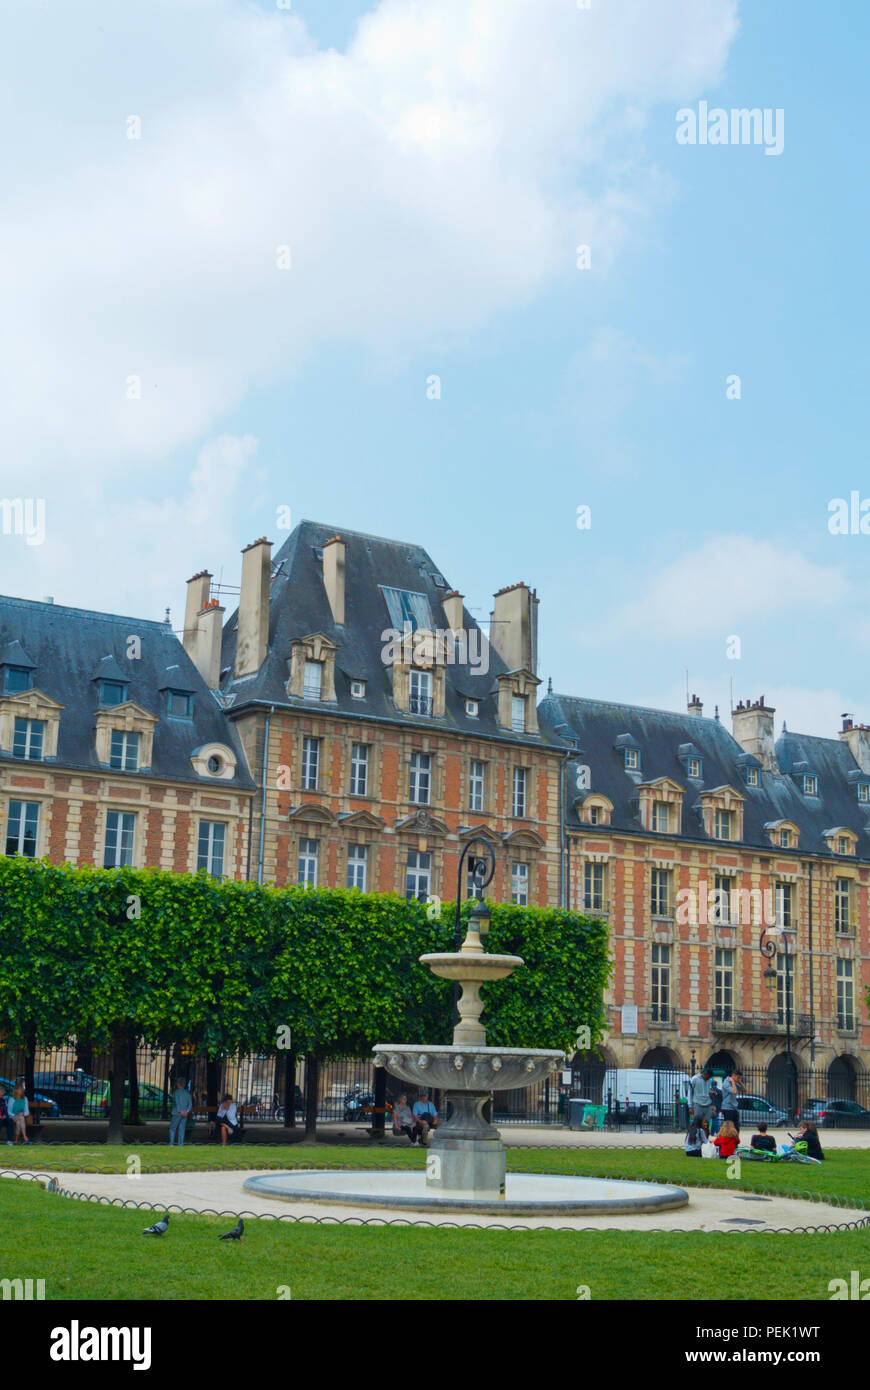 Place des Vosges, Le Marais, Paris, France Stock Photo